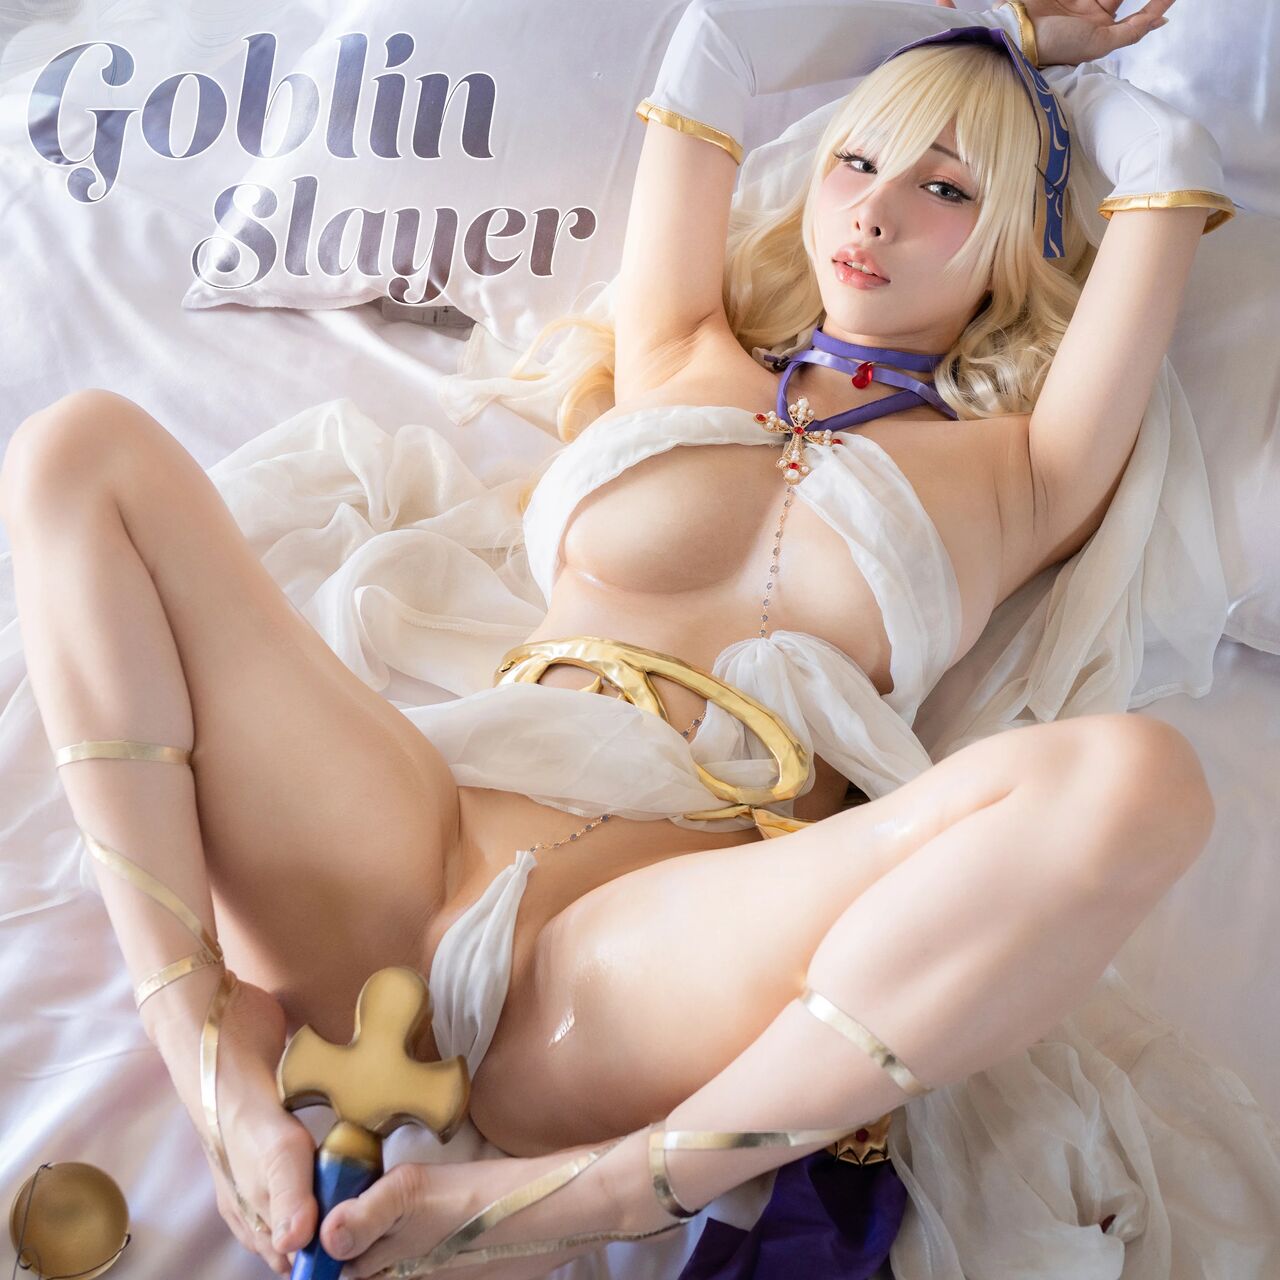 Read Haneame Sword Maiden Goblin Slayer Hentai Porns Manga And